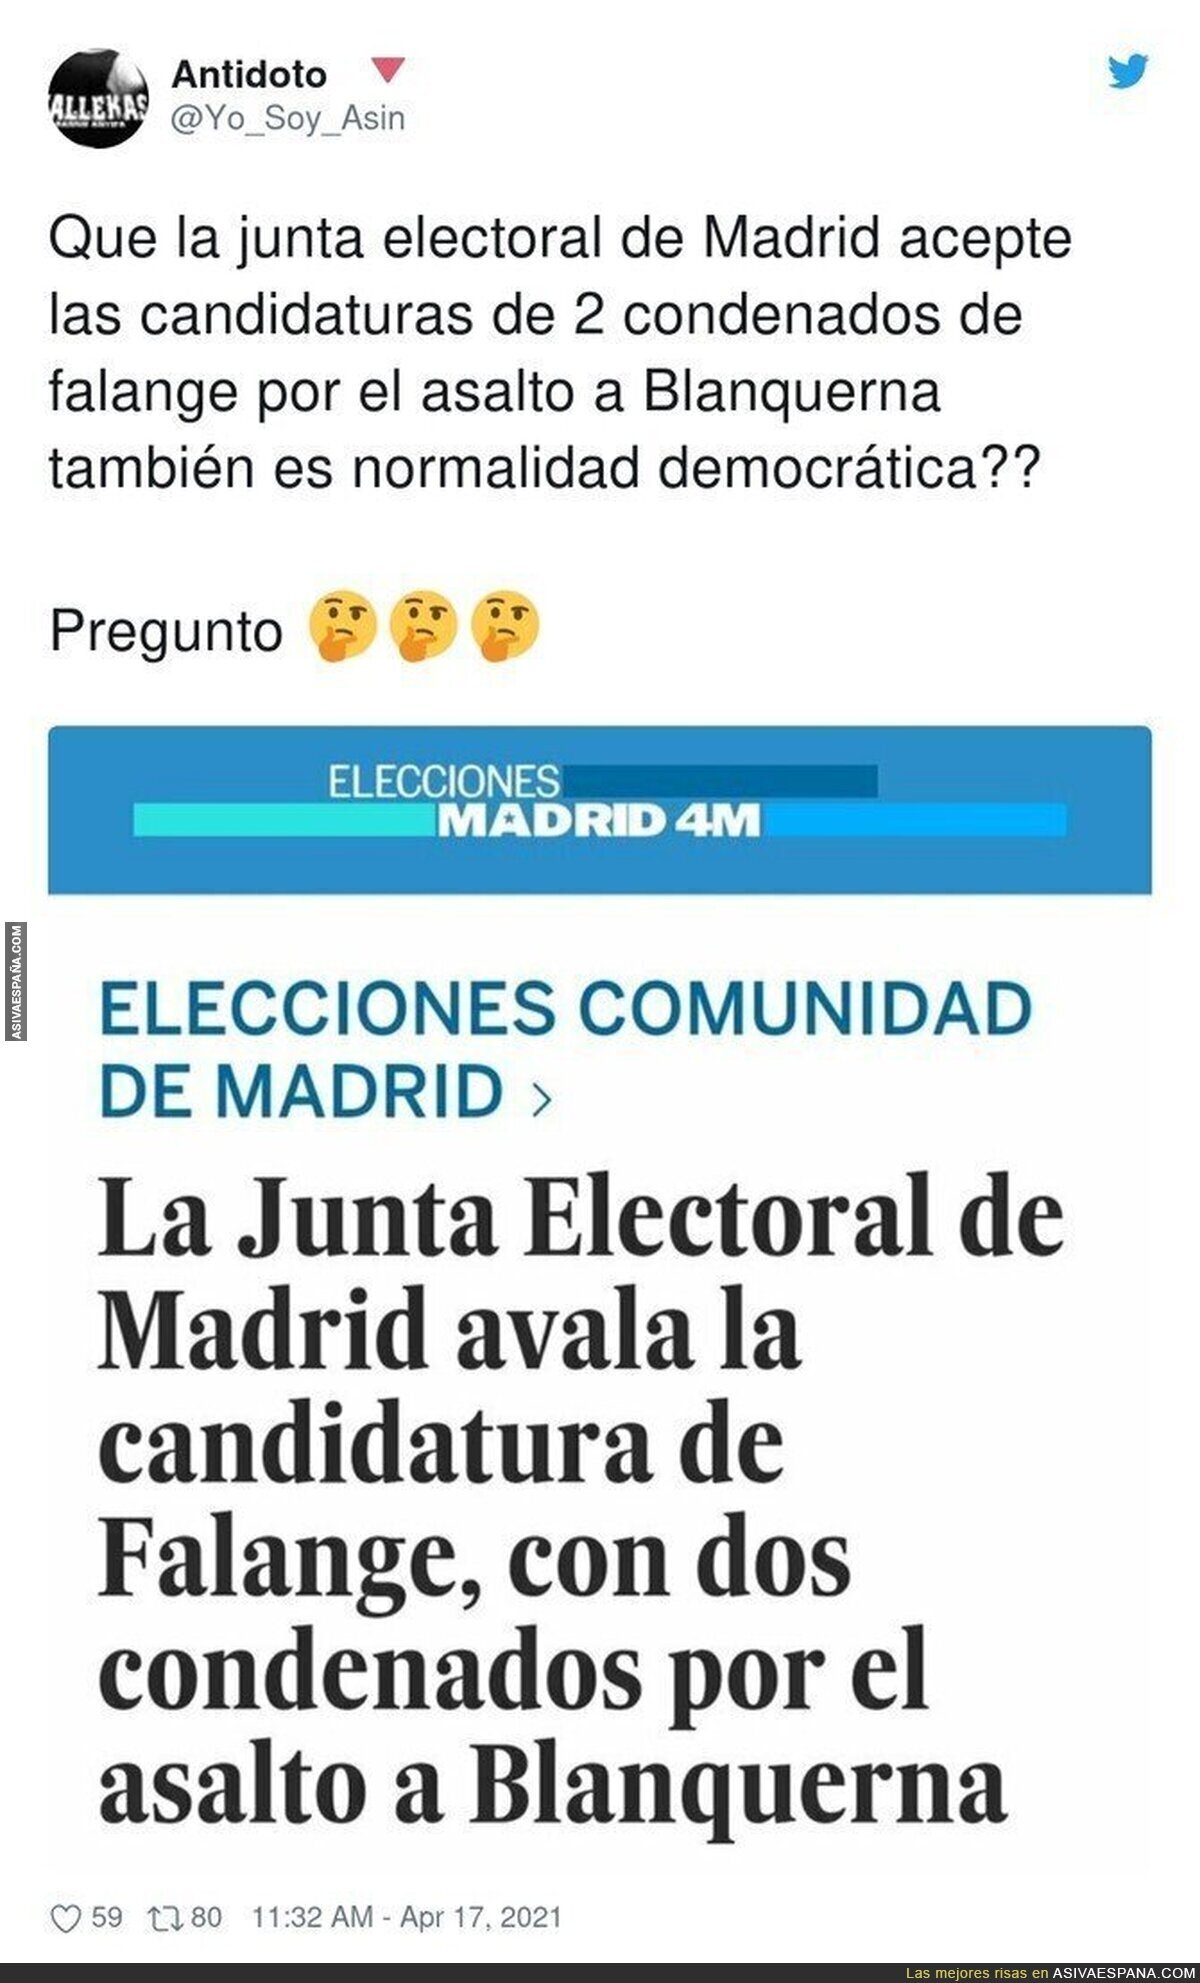 Normalidad democrática en Madrid